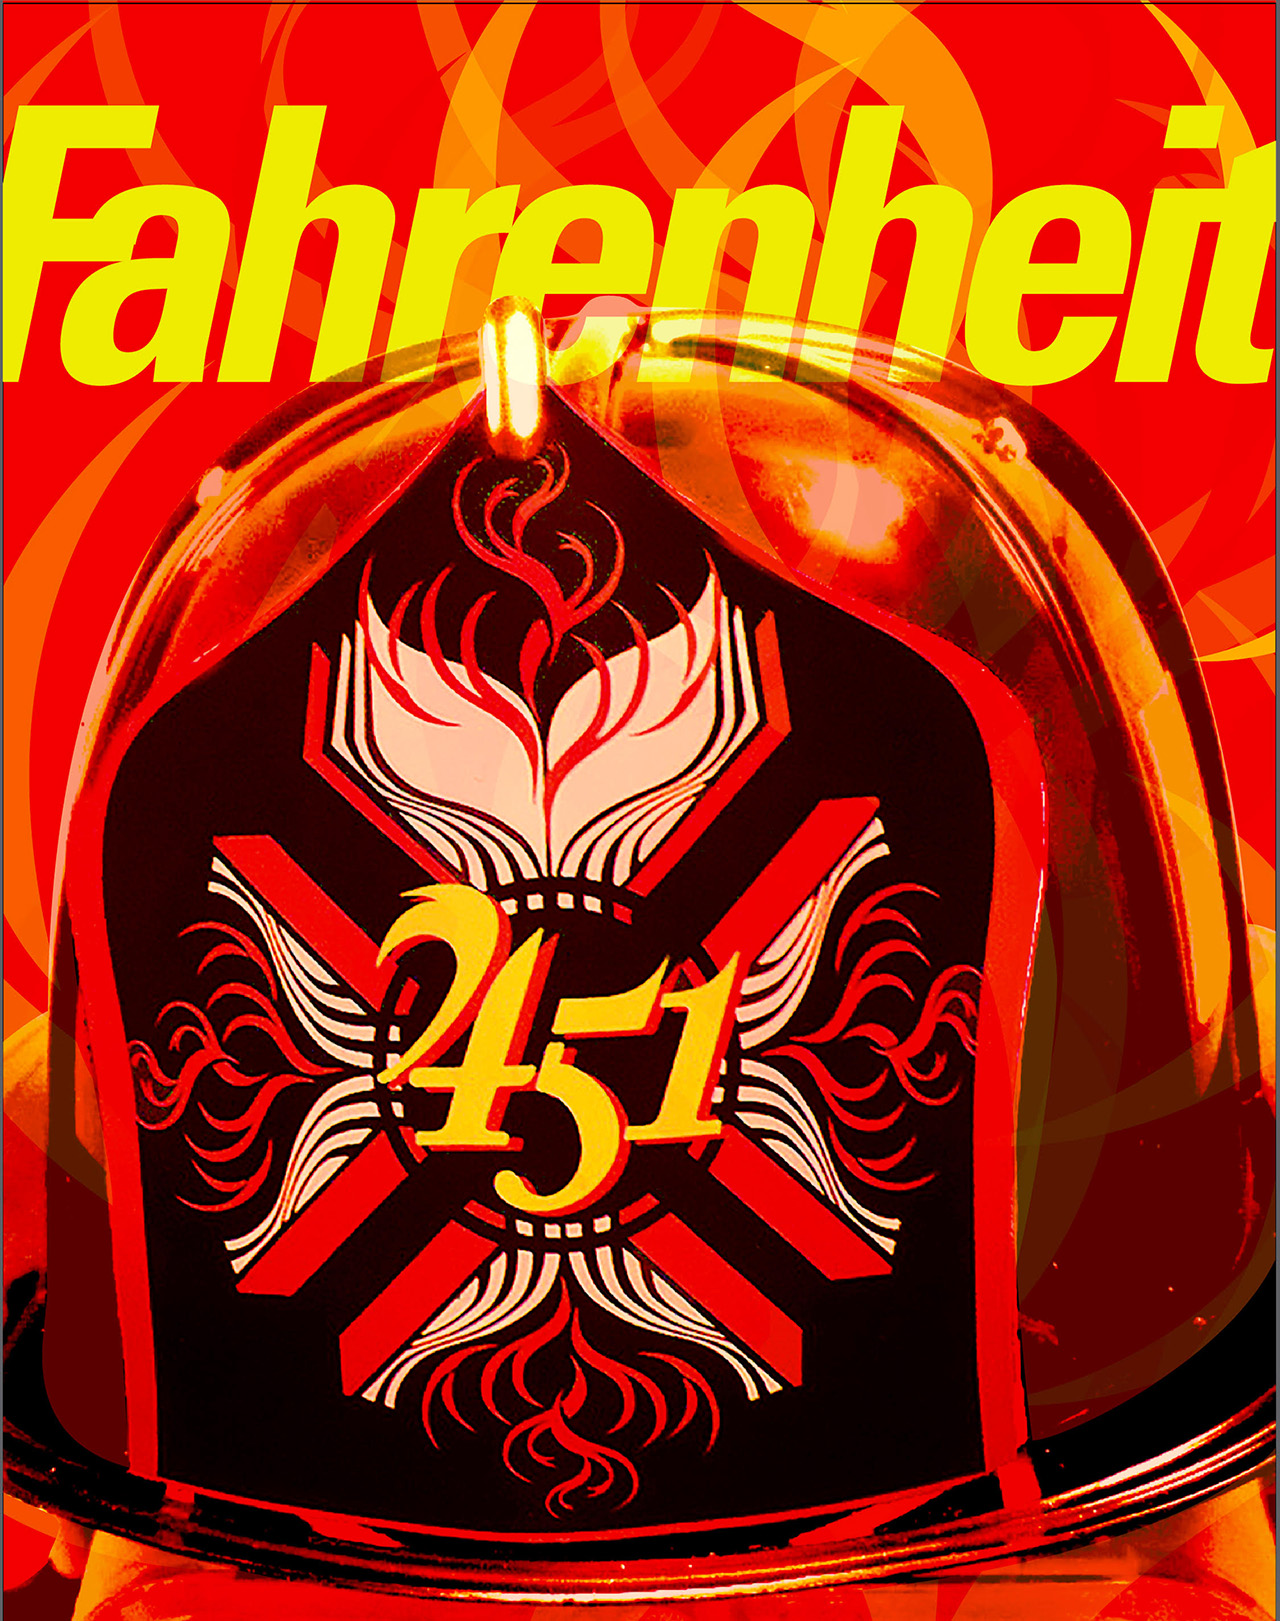 Todd Childers | "Fahrenheit 451" by Ray Bradbury